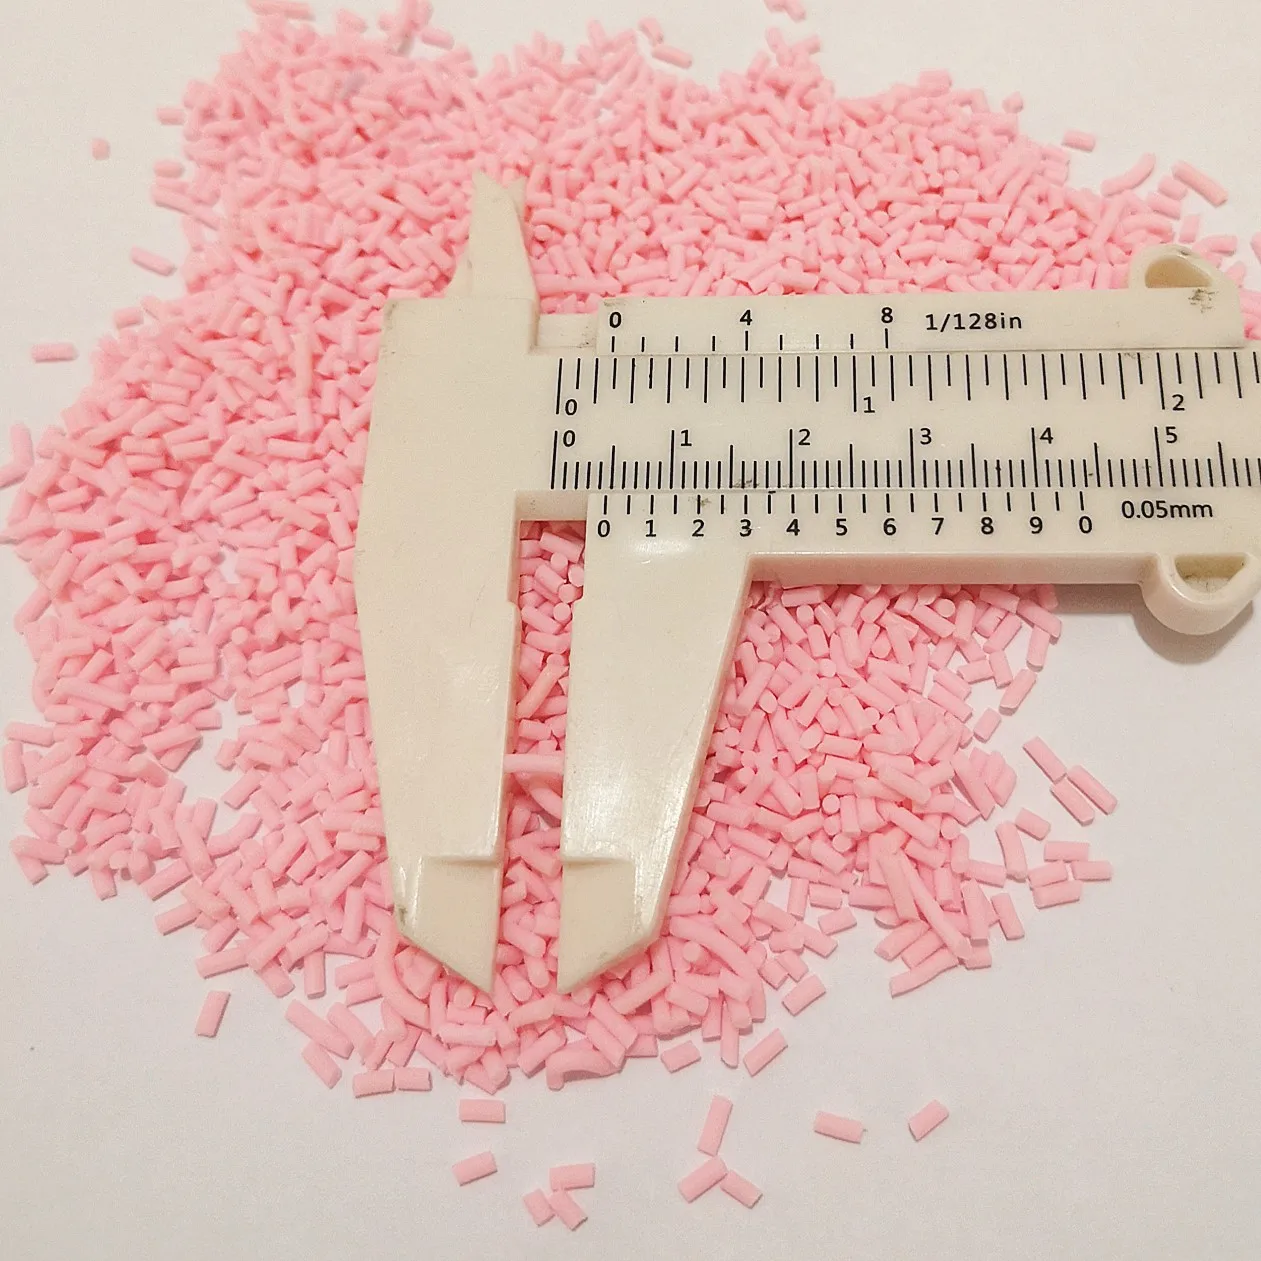 1 кг слизистая глина разбрызгивает Макарон цвета для слизи наполнитель DIY Поставки конфет поддельный сахар торт десерт грязь украшение игрушка аксессуар